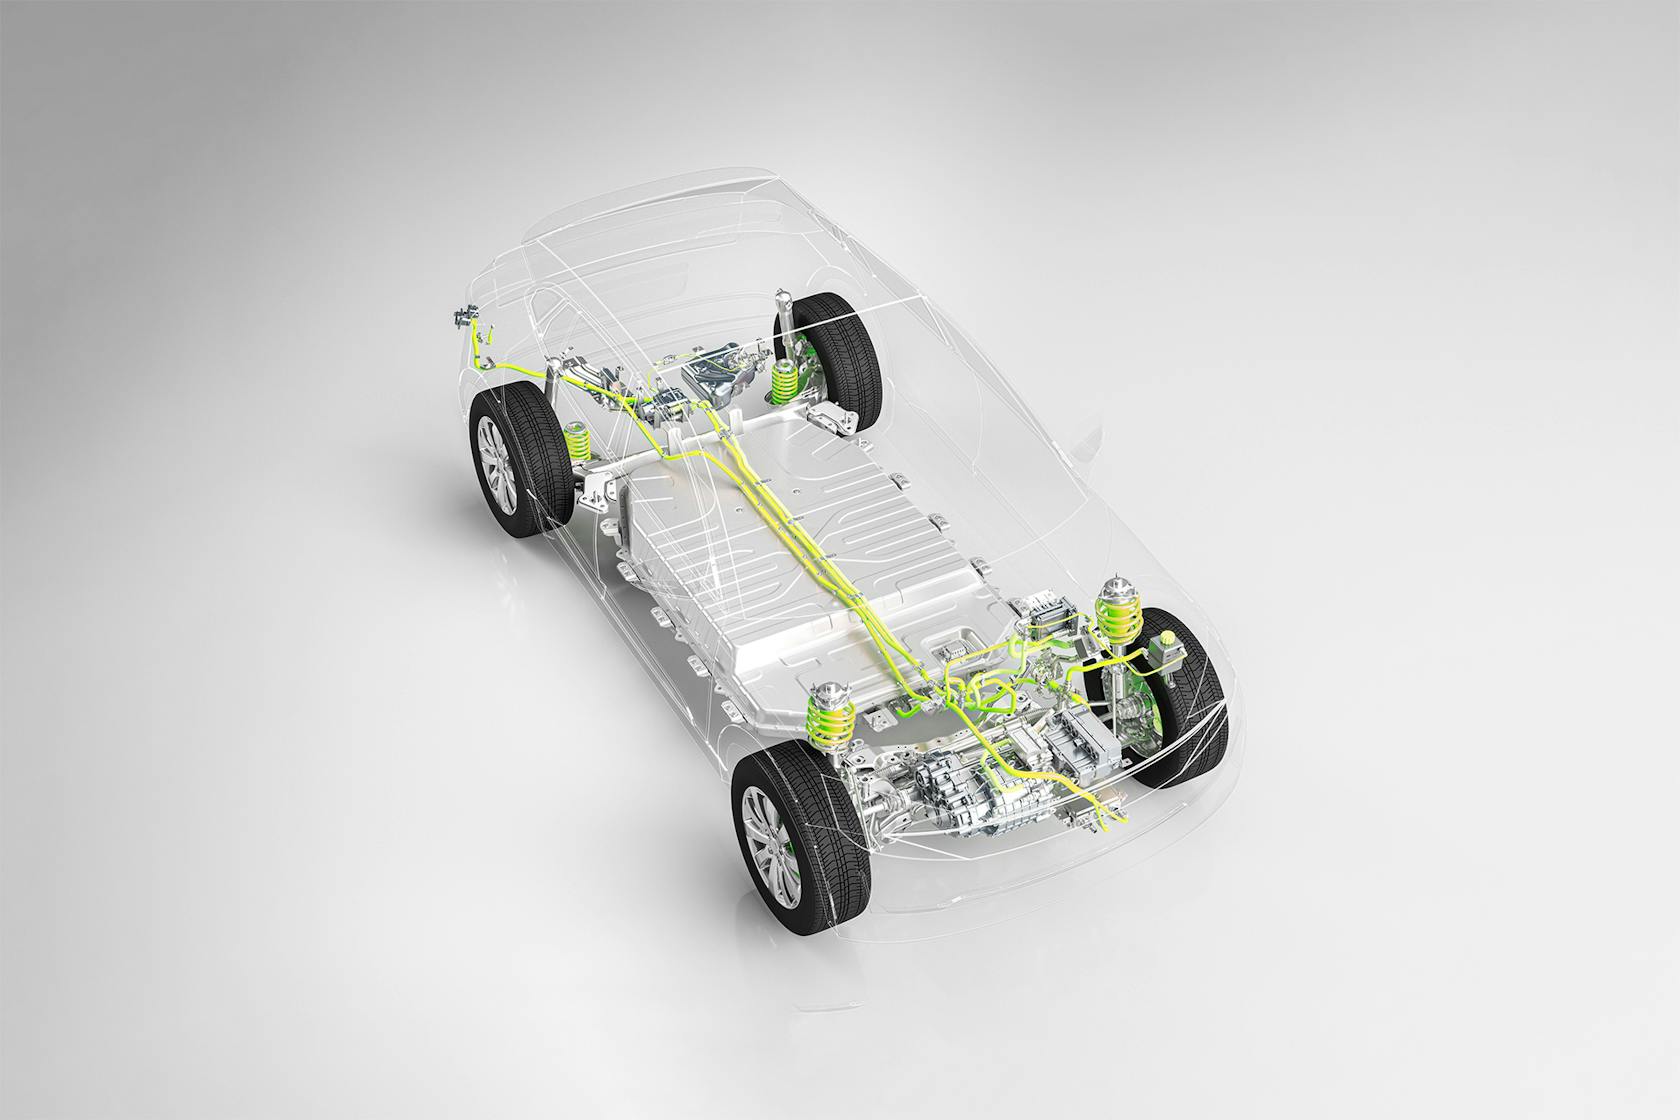 Coche con carrocería transparente que muestra el accionamiento eléctrico y la tecnología de batería.